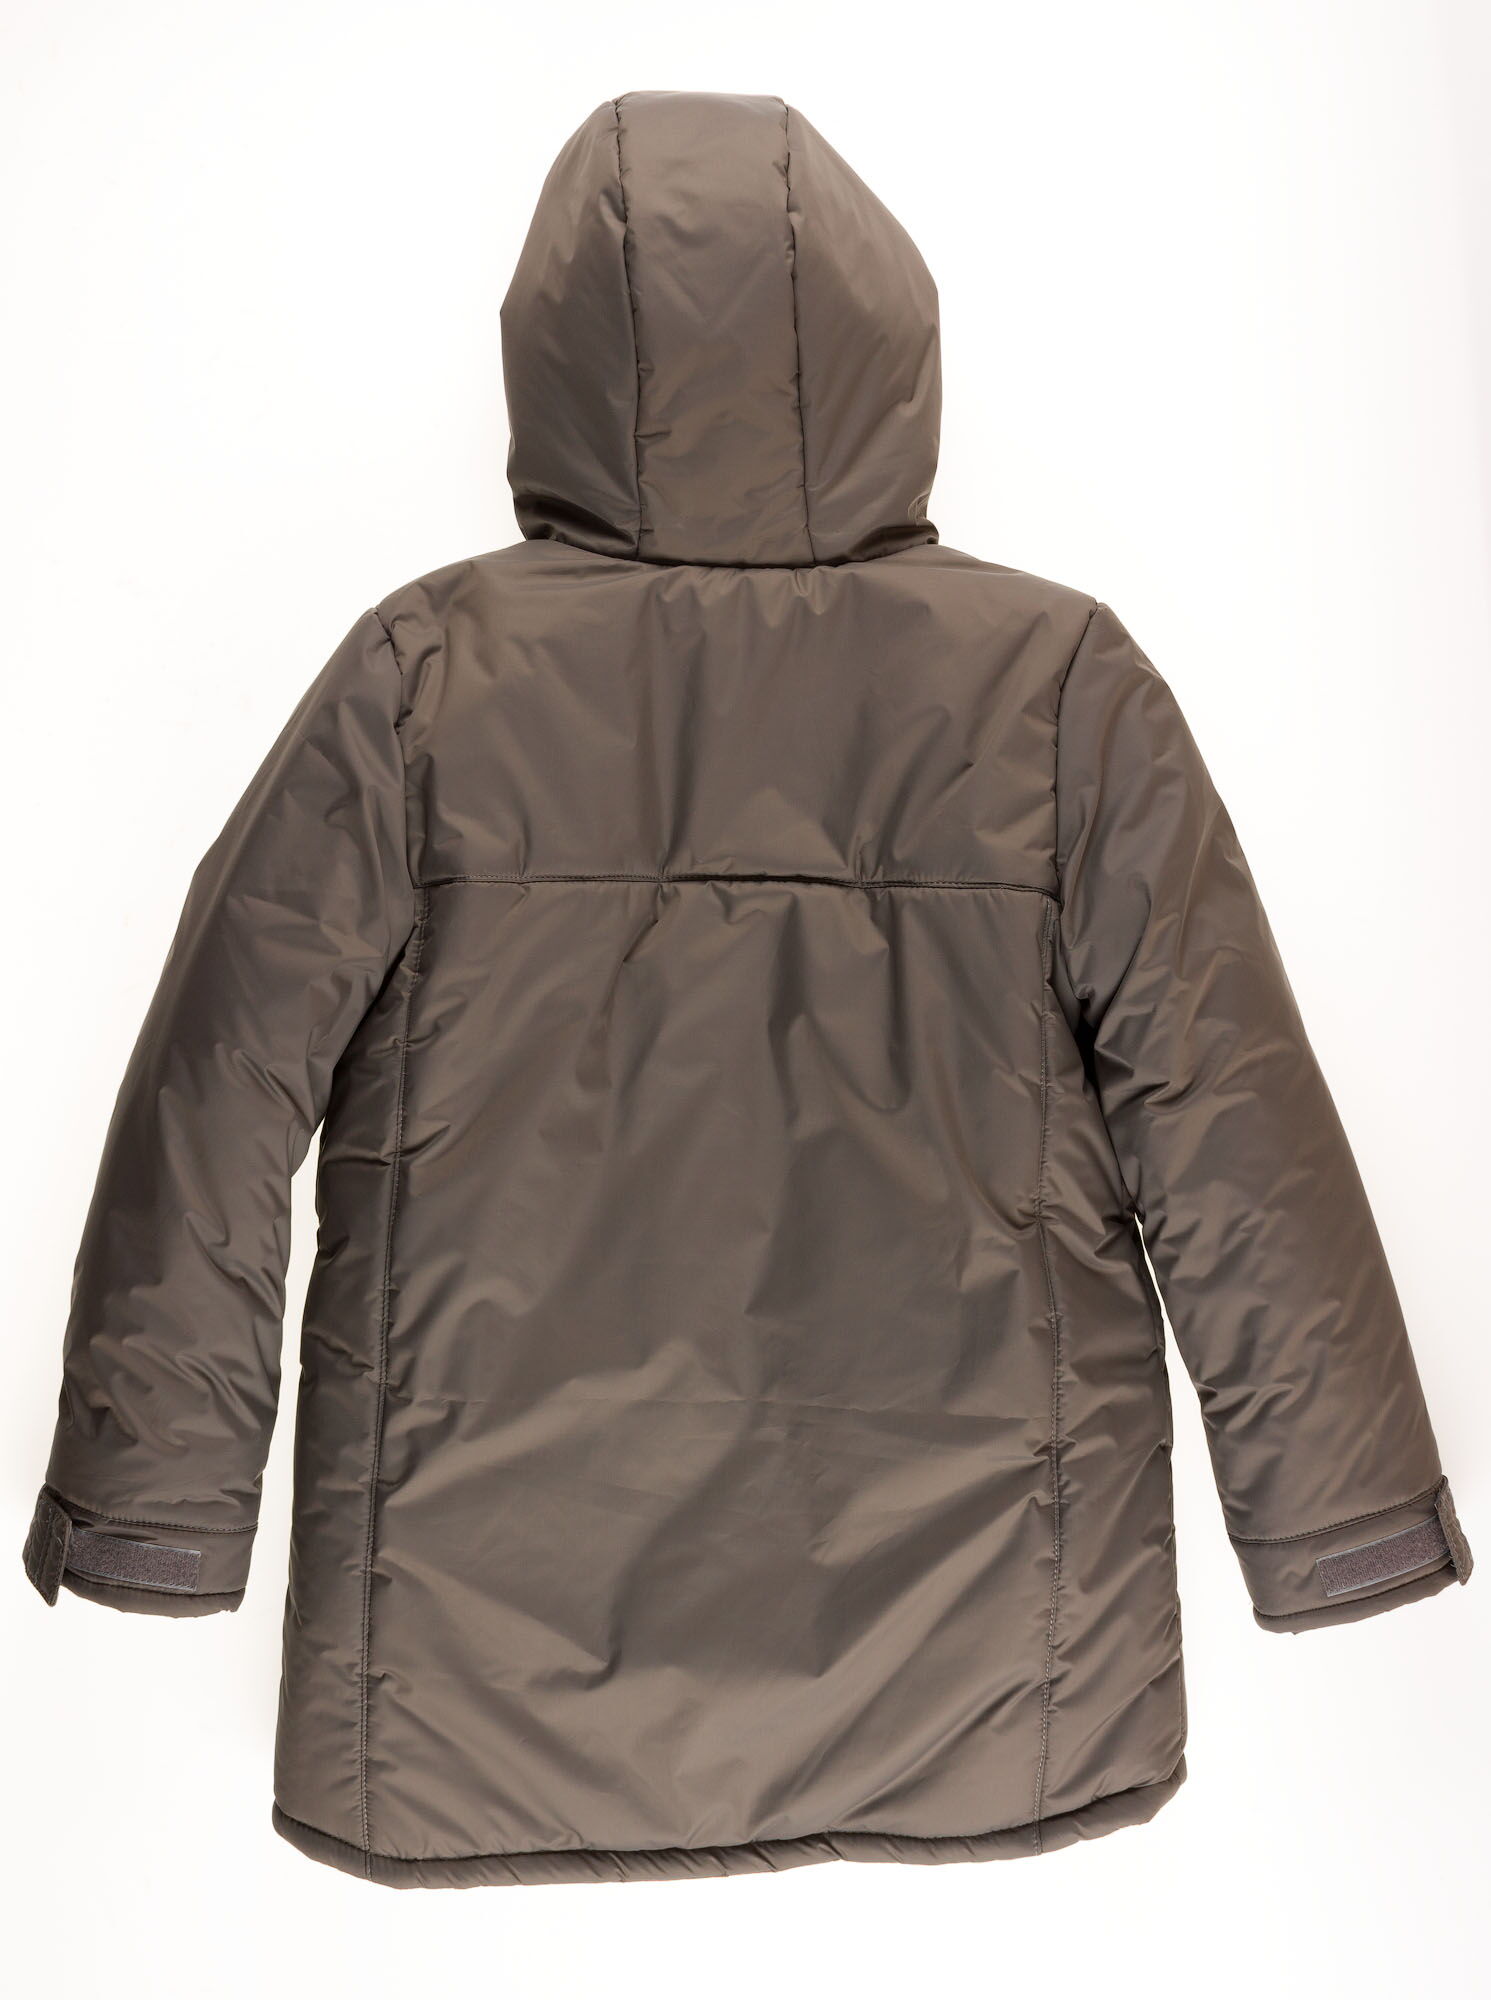 Куртка зимняя для мальчика Одягайко серая 20079 - размеры